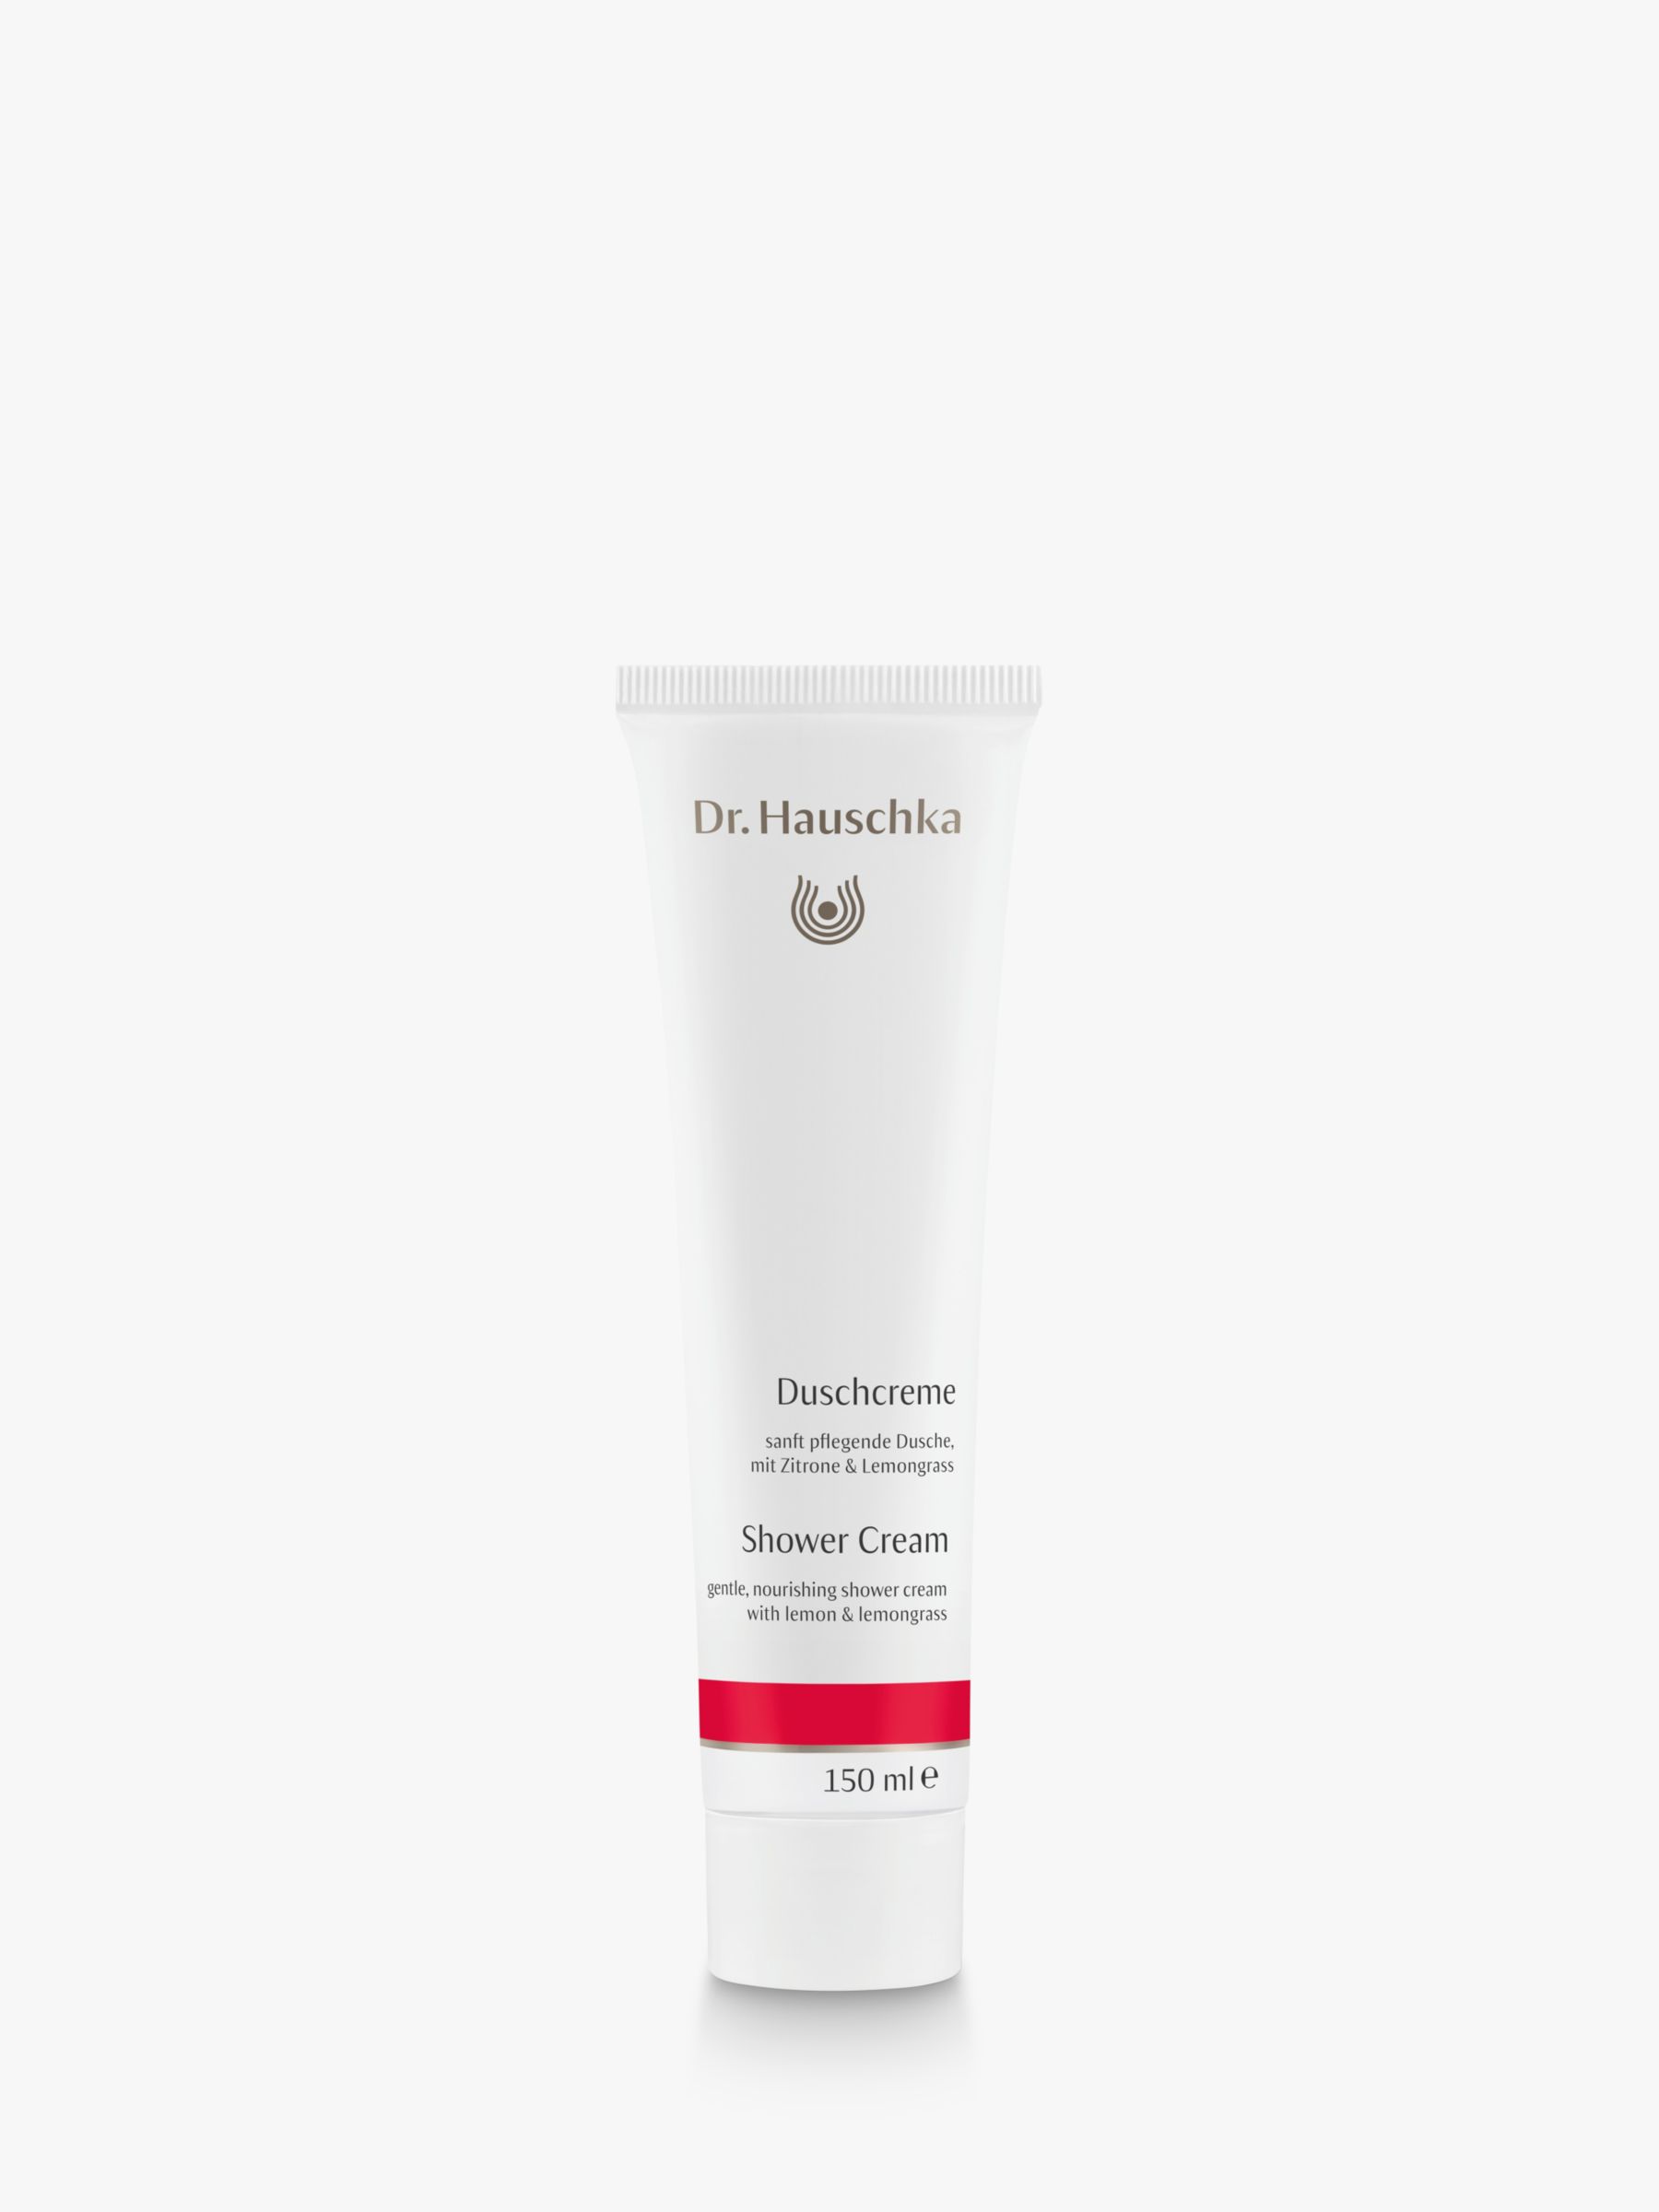 Dr Hauschka Shower Cream, 150ml